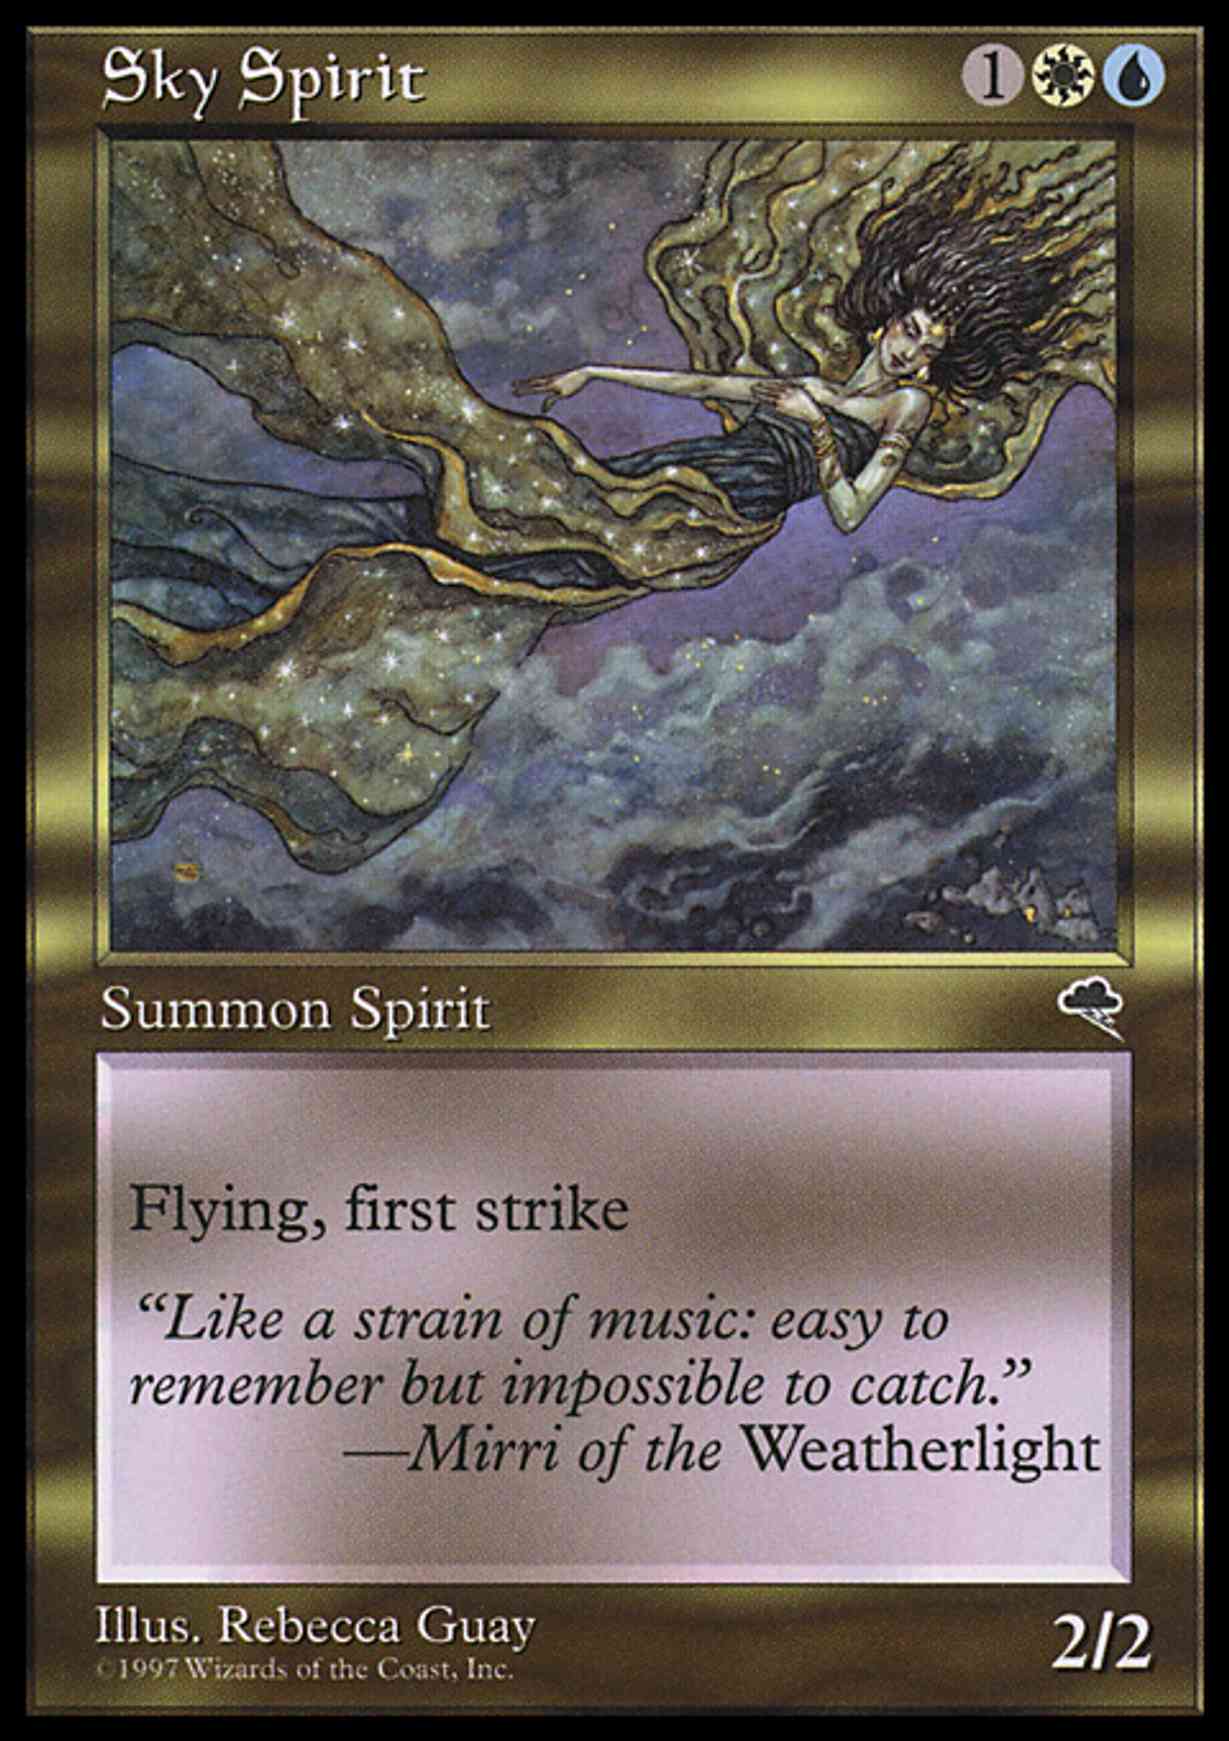 Sky Spirit magic card front